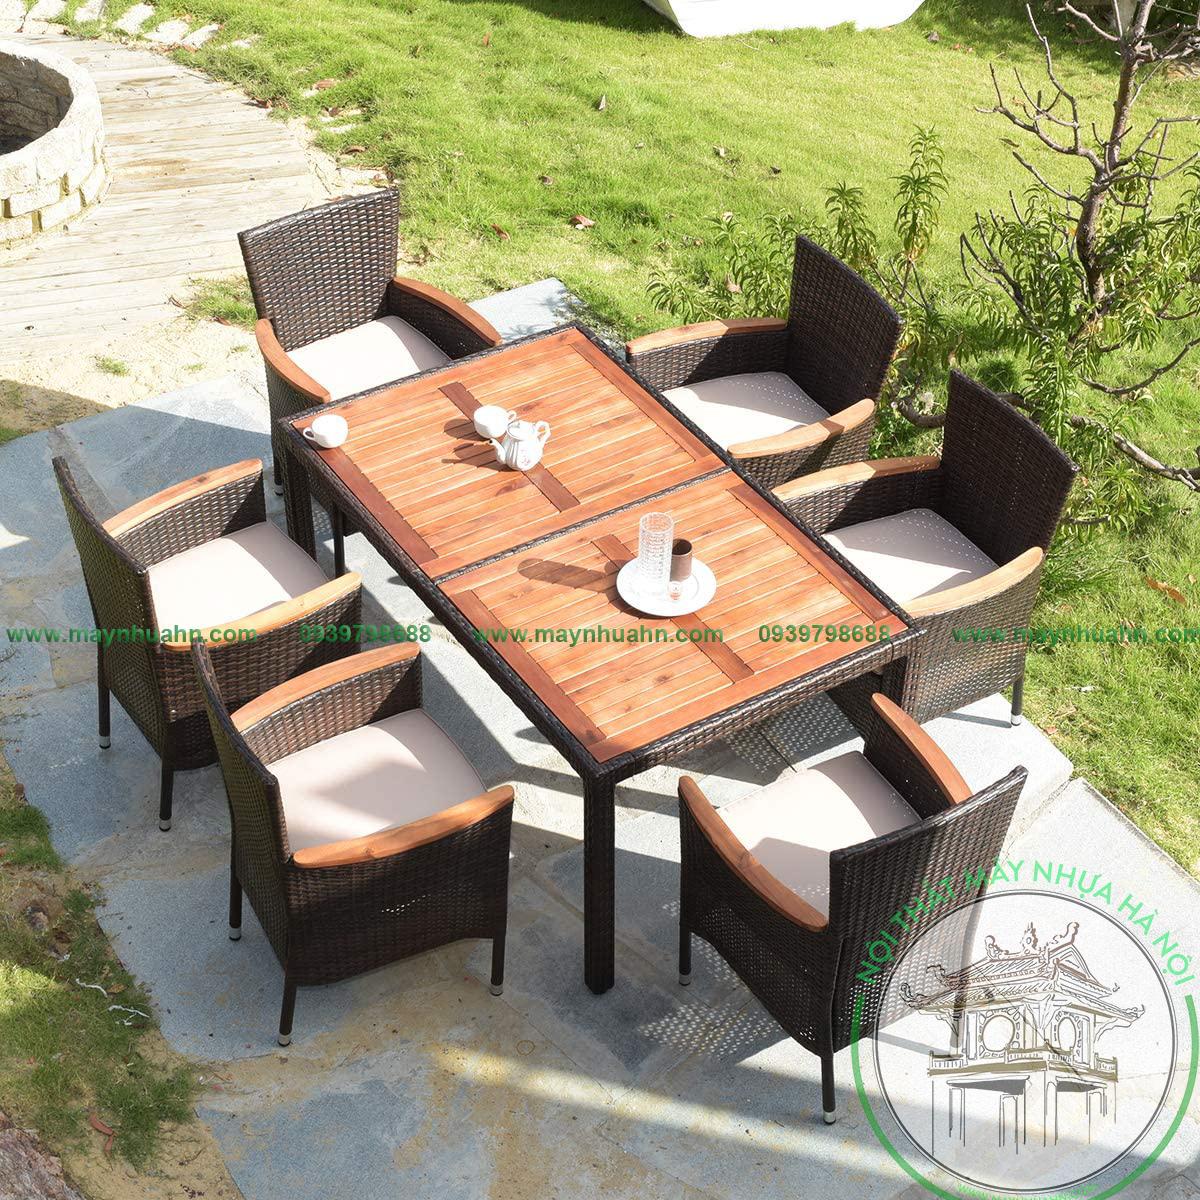 Tổng hợp các mẫu bàn ghế ngoài trời kiểu dáng đẹp cho quán café, sân vườn  biệt thự, hàng có sẵn. | ChoVinh.com | Nhà cửa, Ghế ngoài trời, Bộ bàn ghế